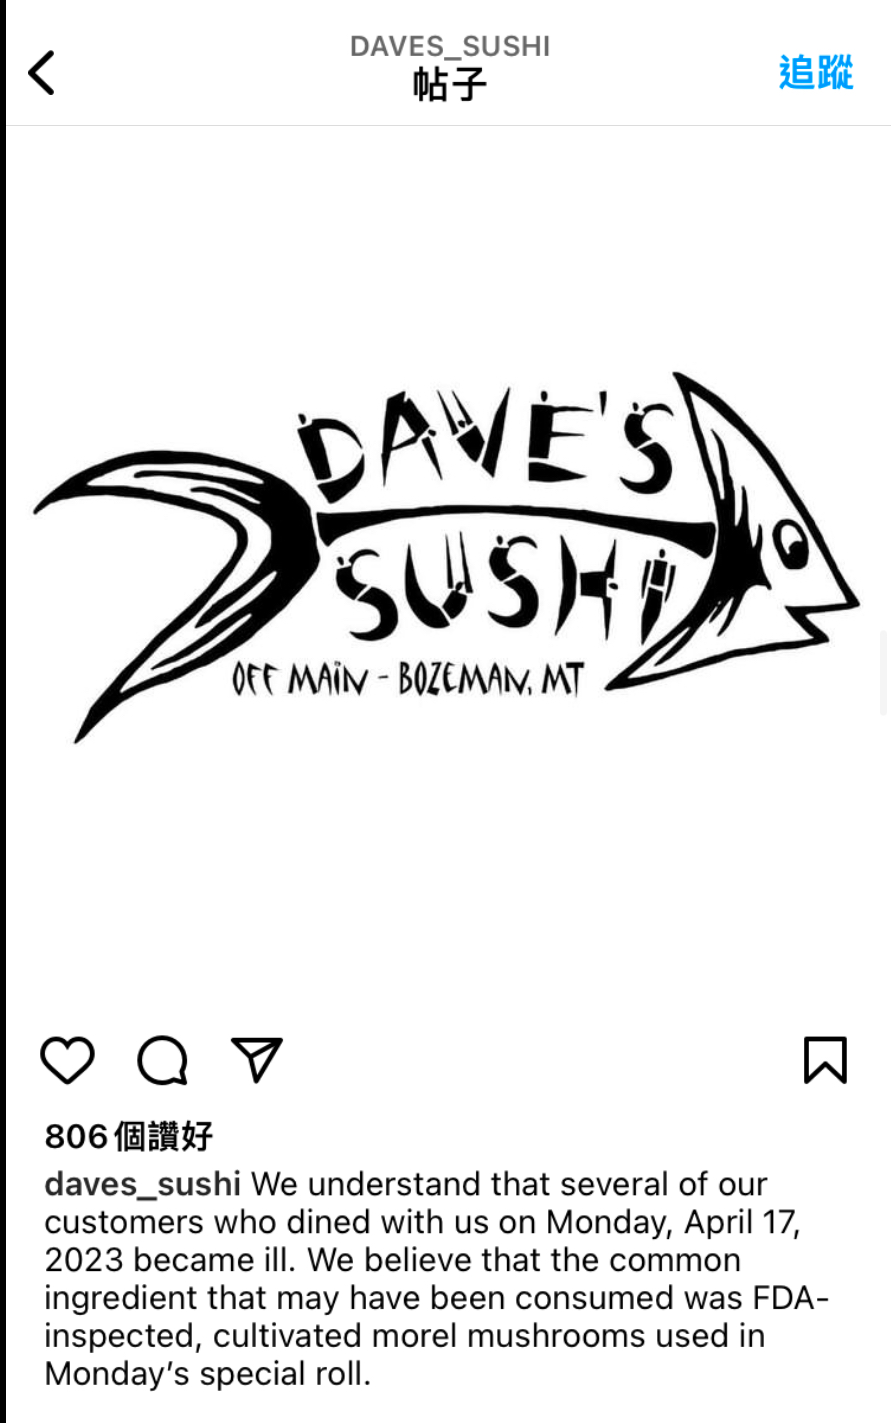 戴夫寿司出事后发文承认食材羊肚菌出问题。 Instagram